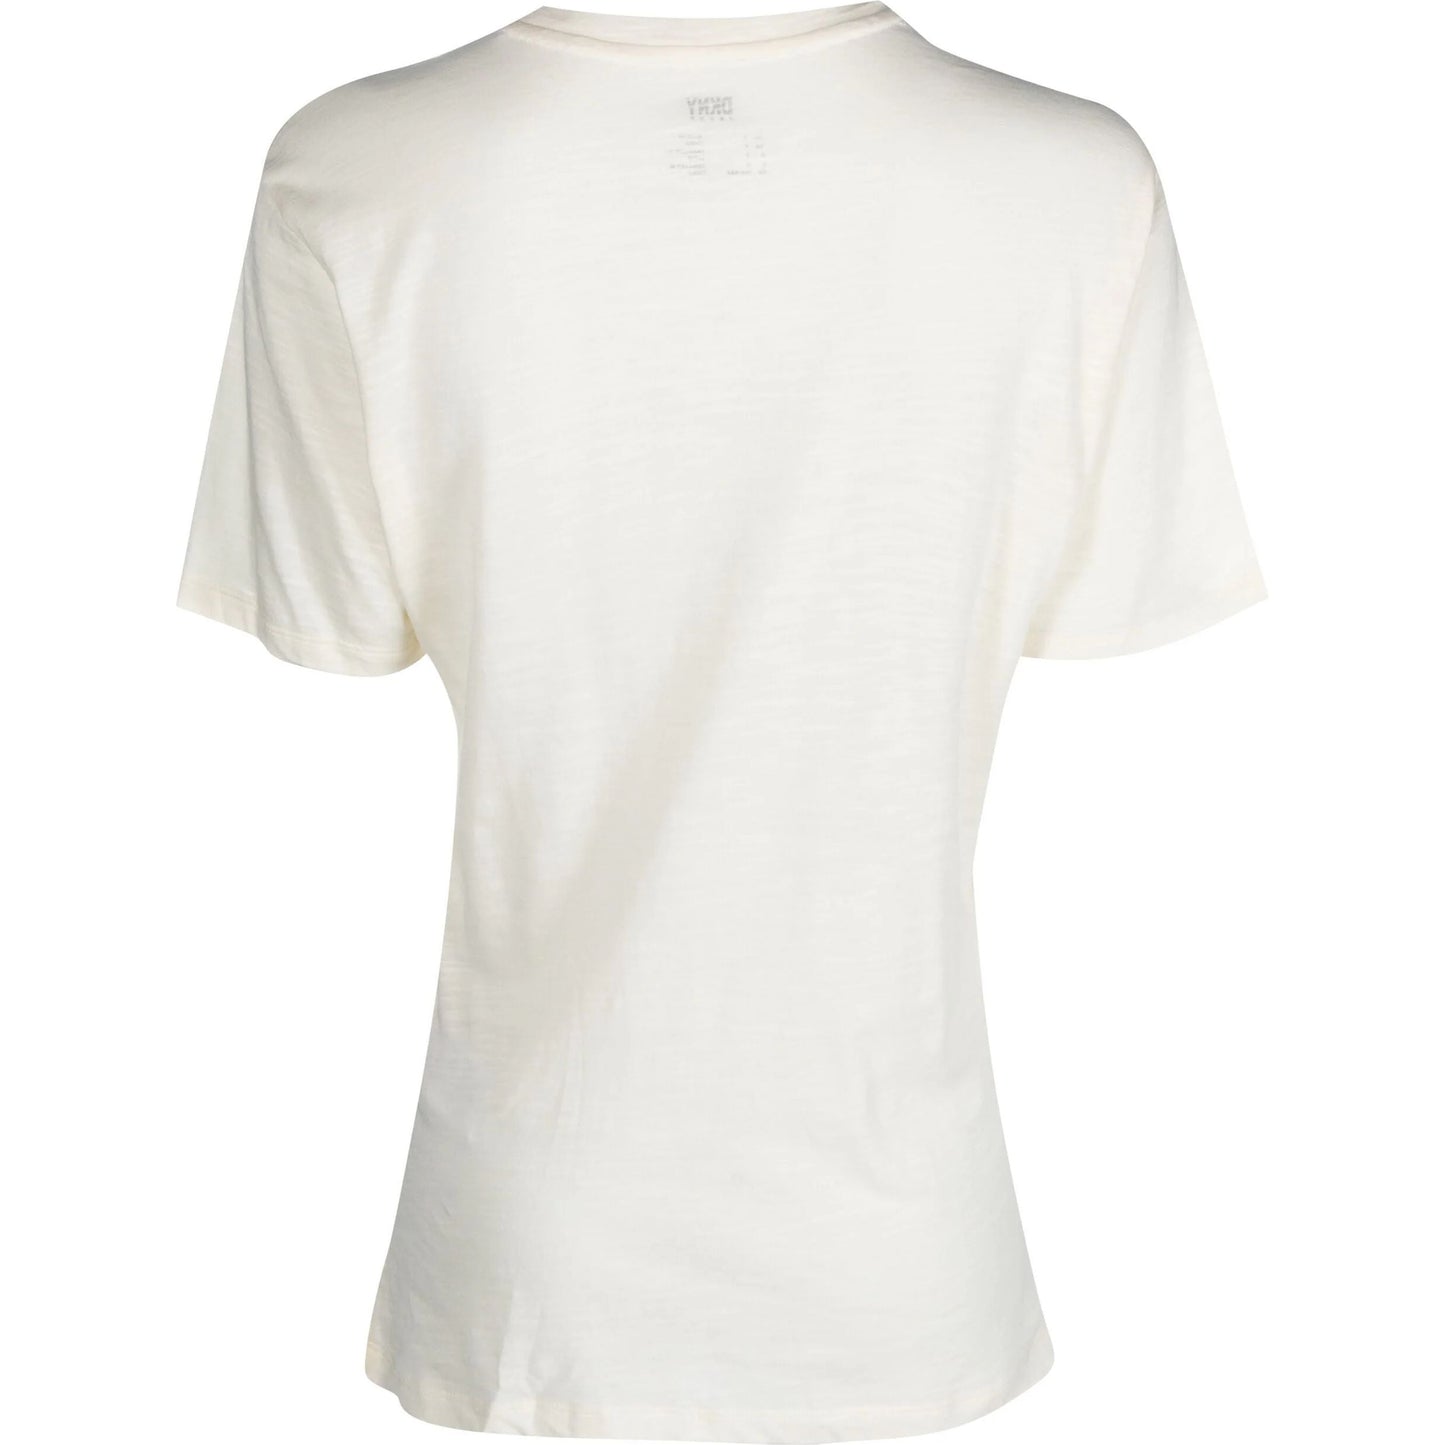 DKNY moteriški šviesūs marškinėliai S/s o ring logo t shirt